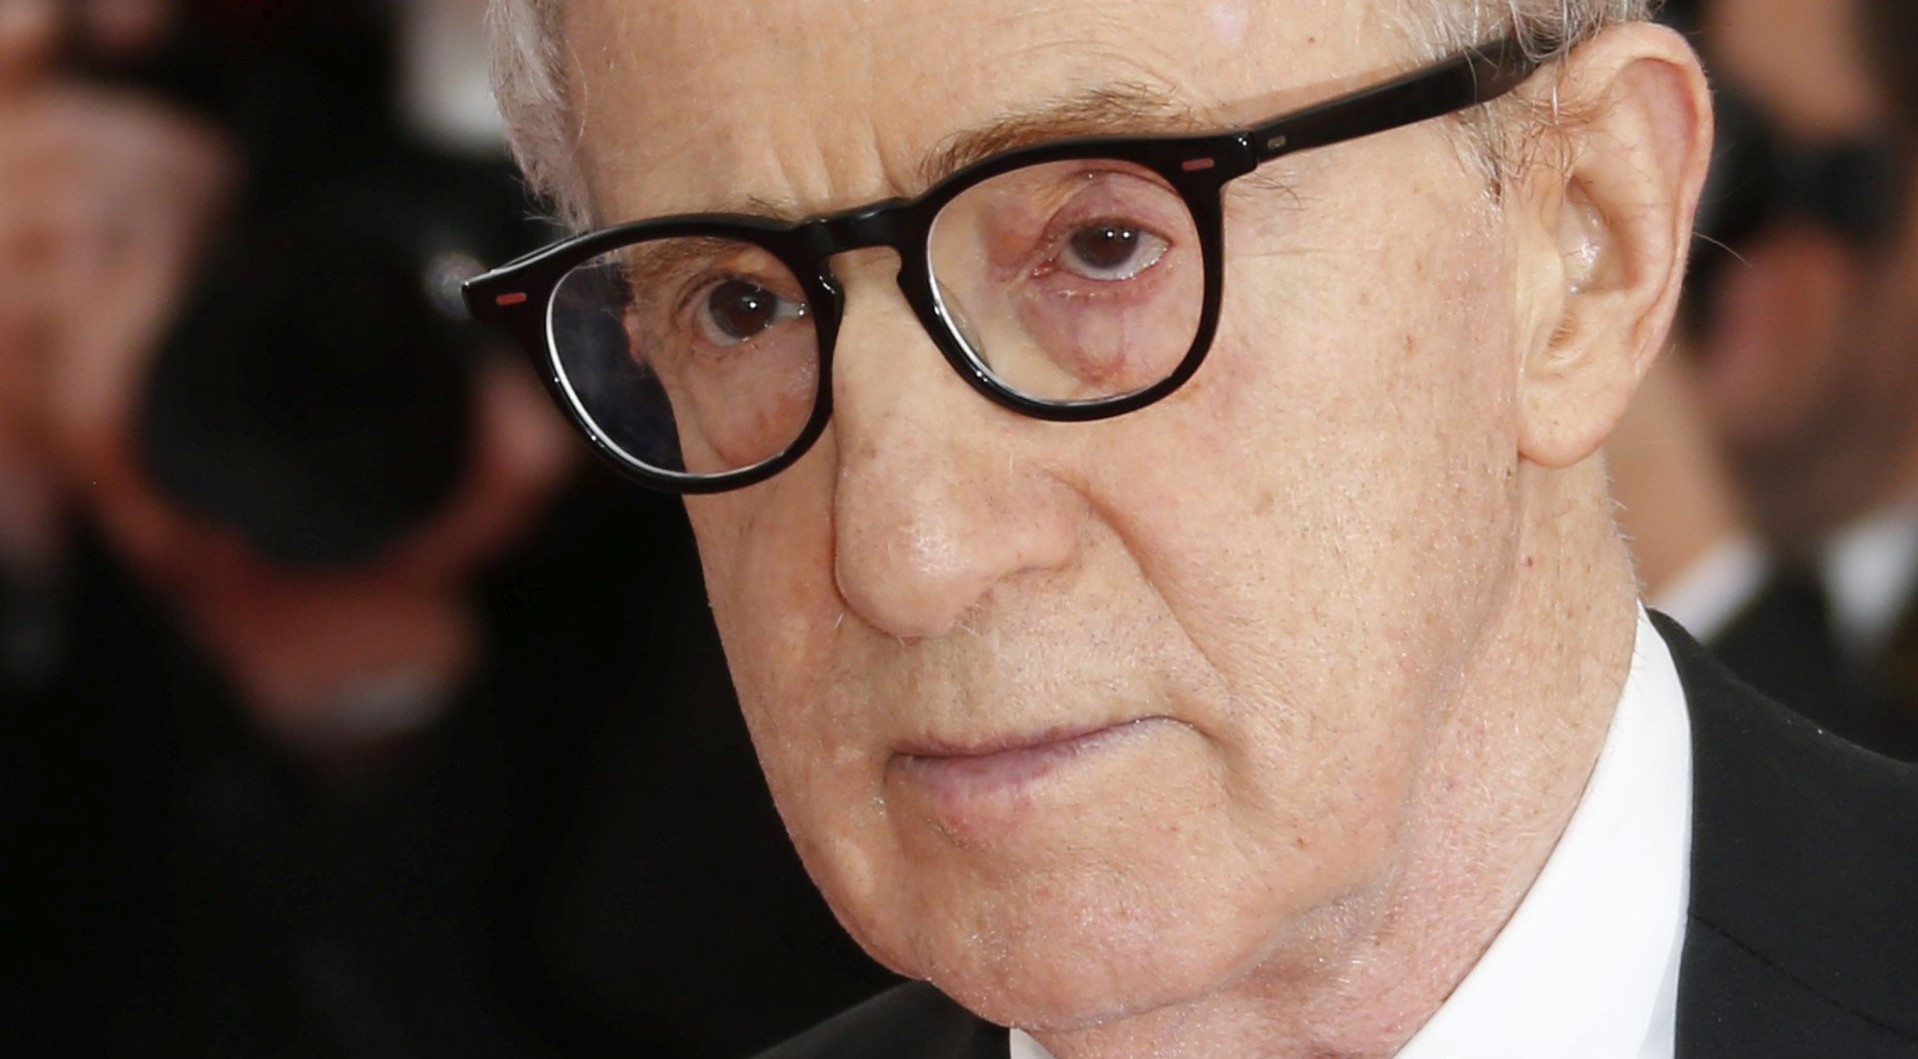 50 GODINA KARIJERE: Woody Allen aktivan s 80 godina i najavljuje nove projekte